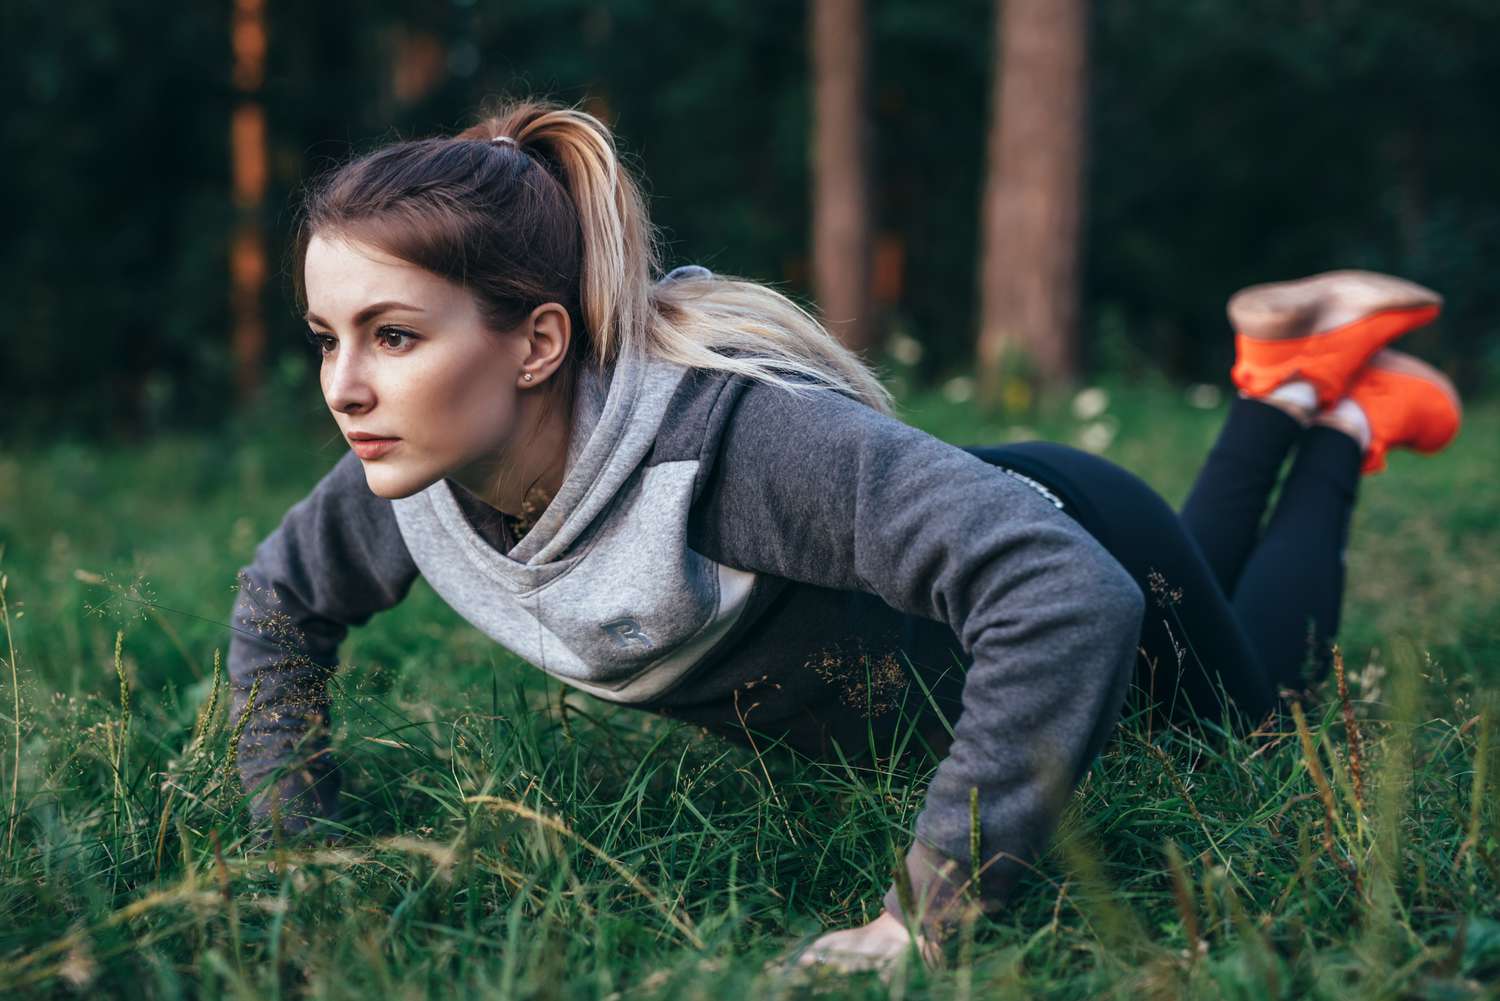 Vrouw die traint op gras in park en knie push-ups doet